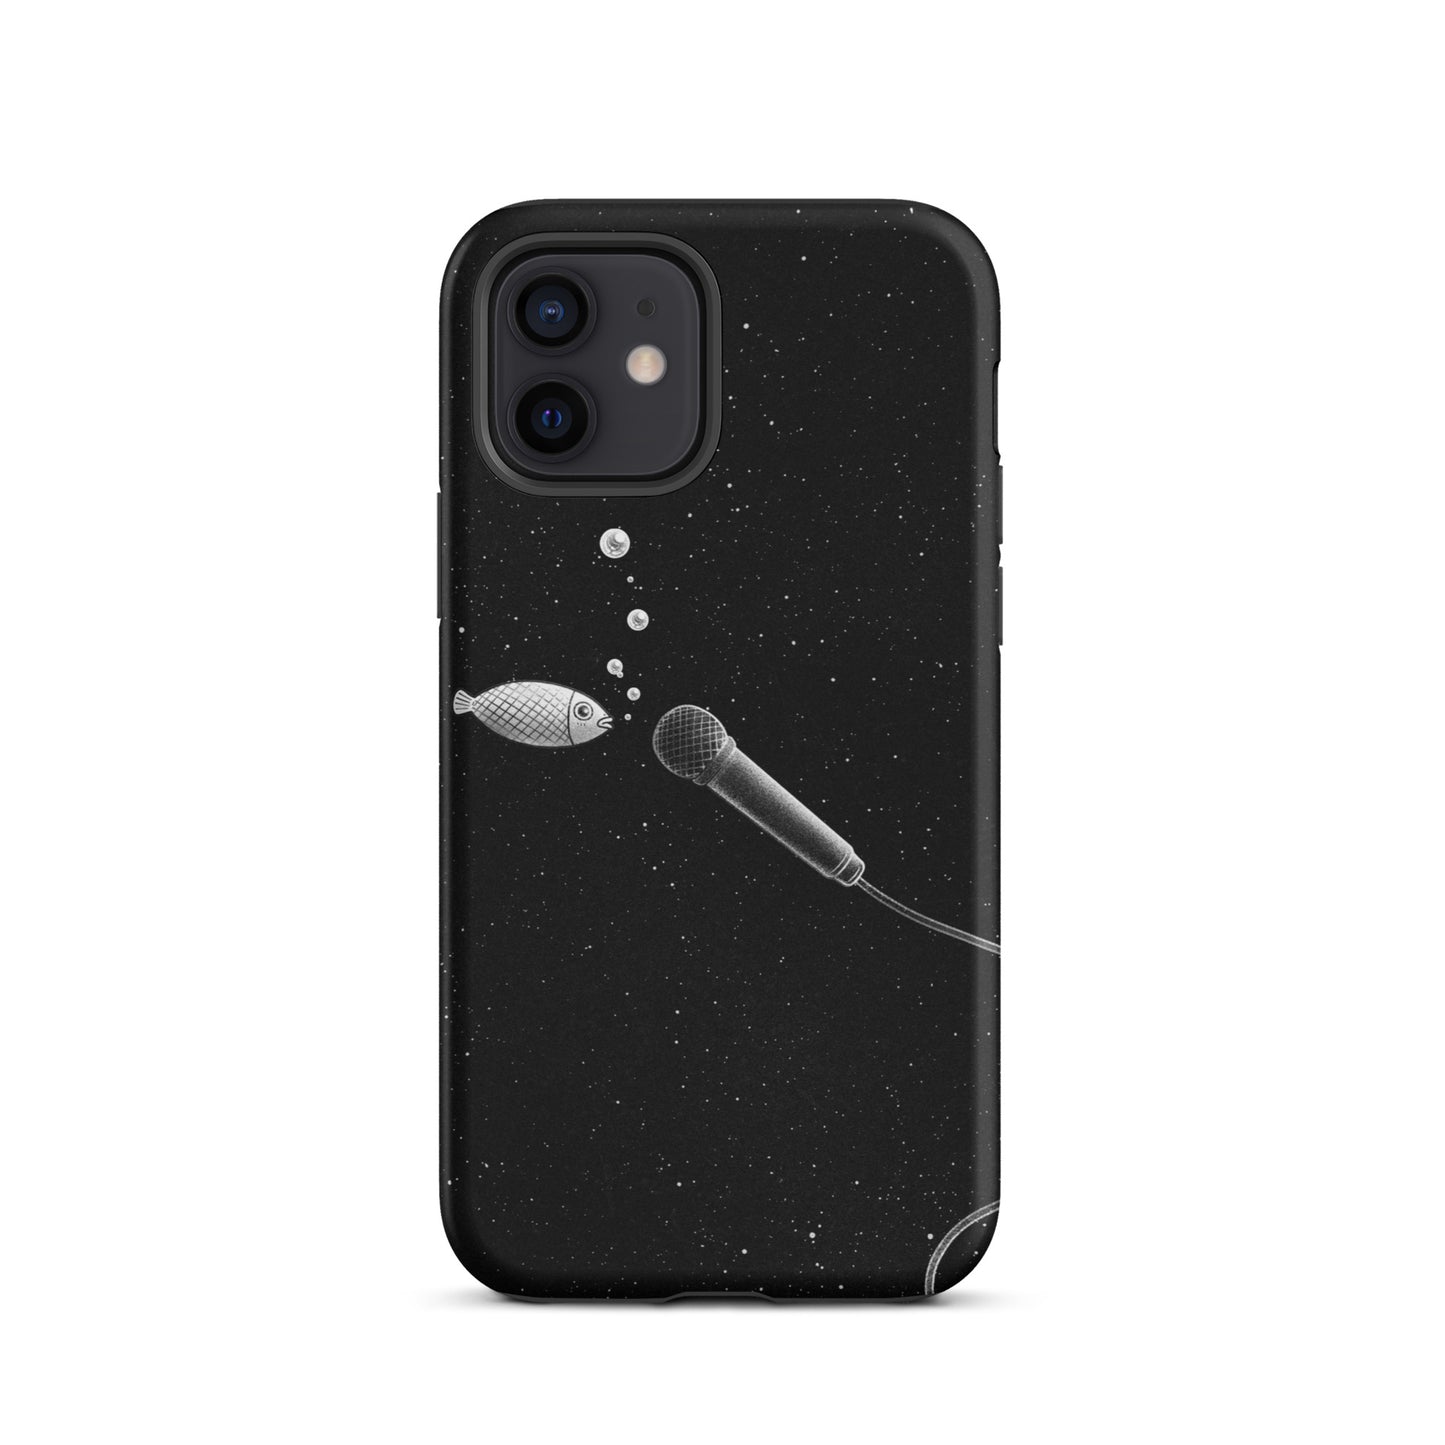 Fish iPhone case